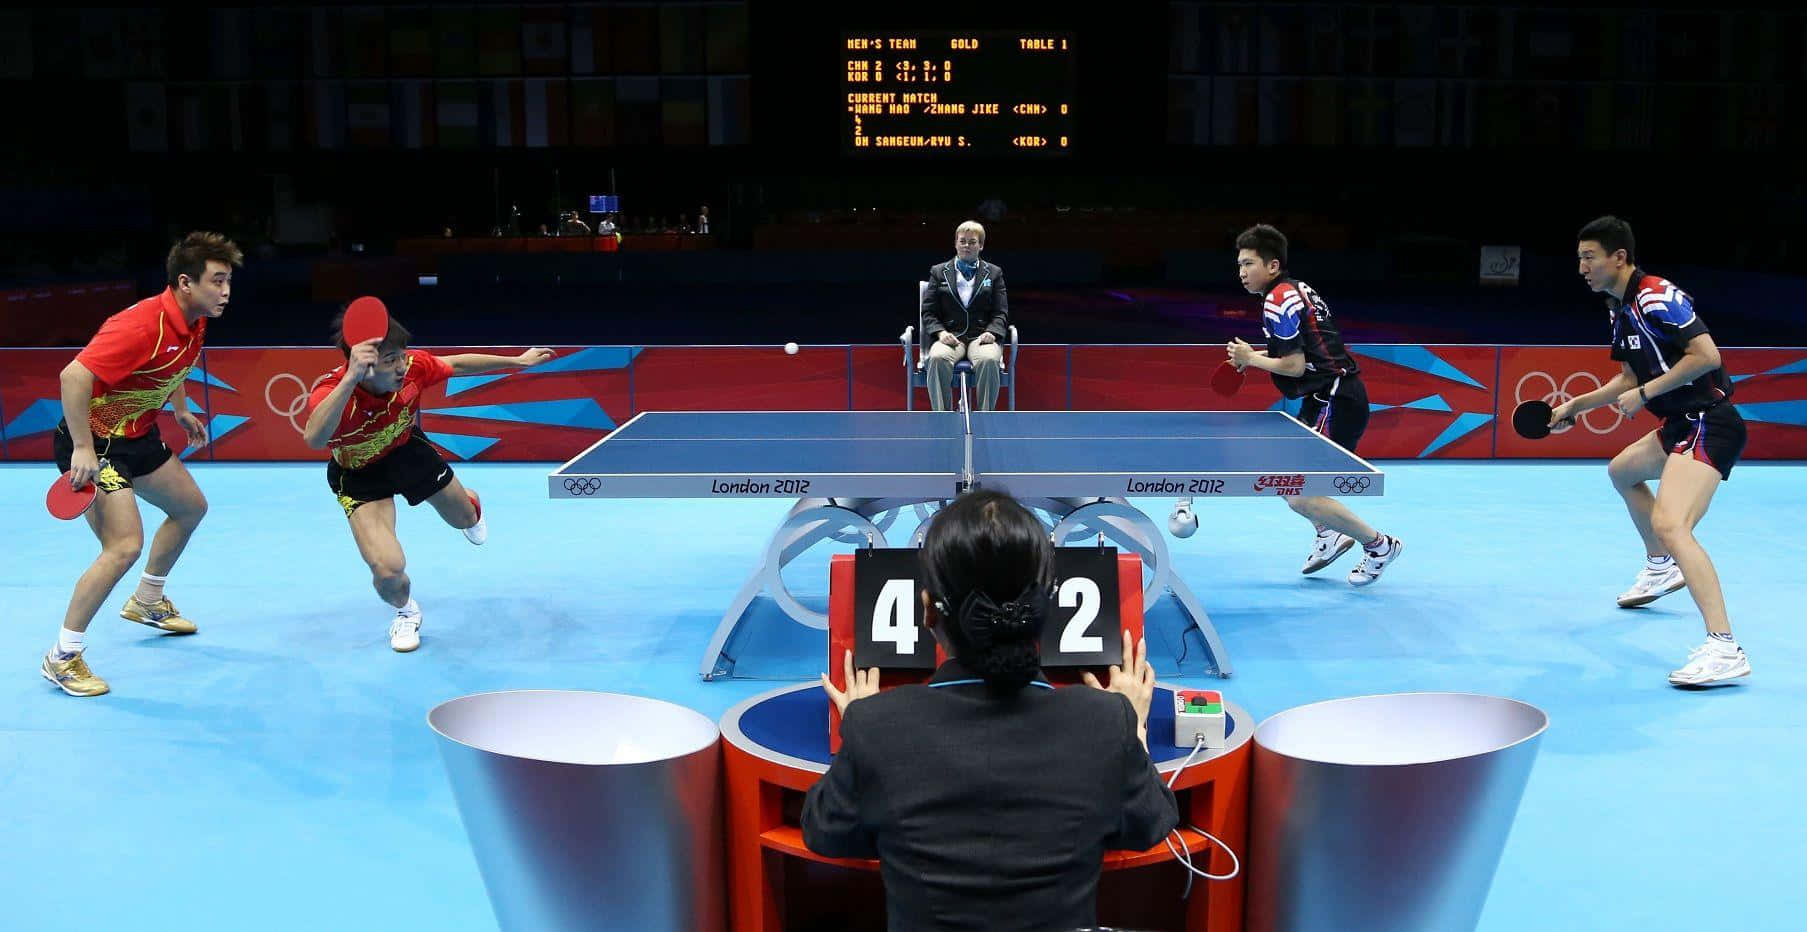 Ungruppo Di Persone Che Gioca A Ping Pong In Un'arena